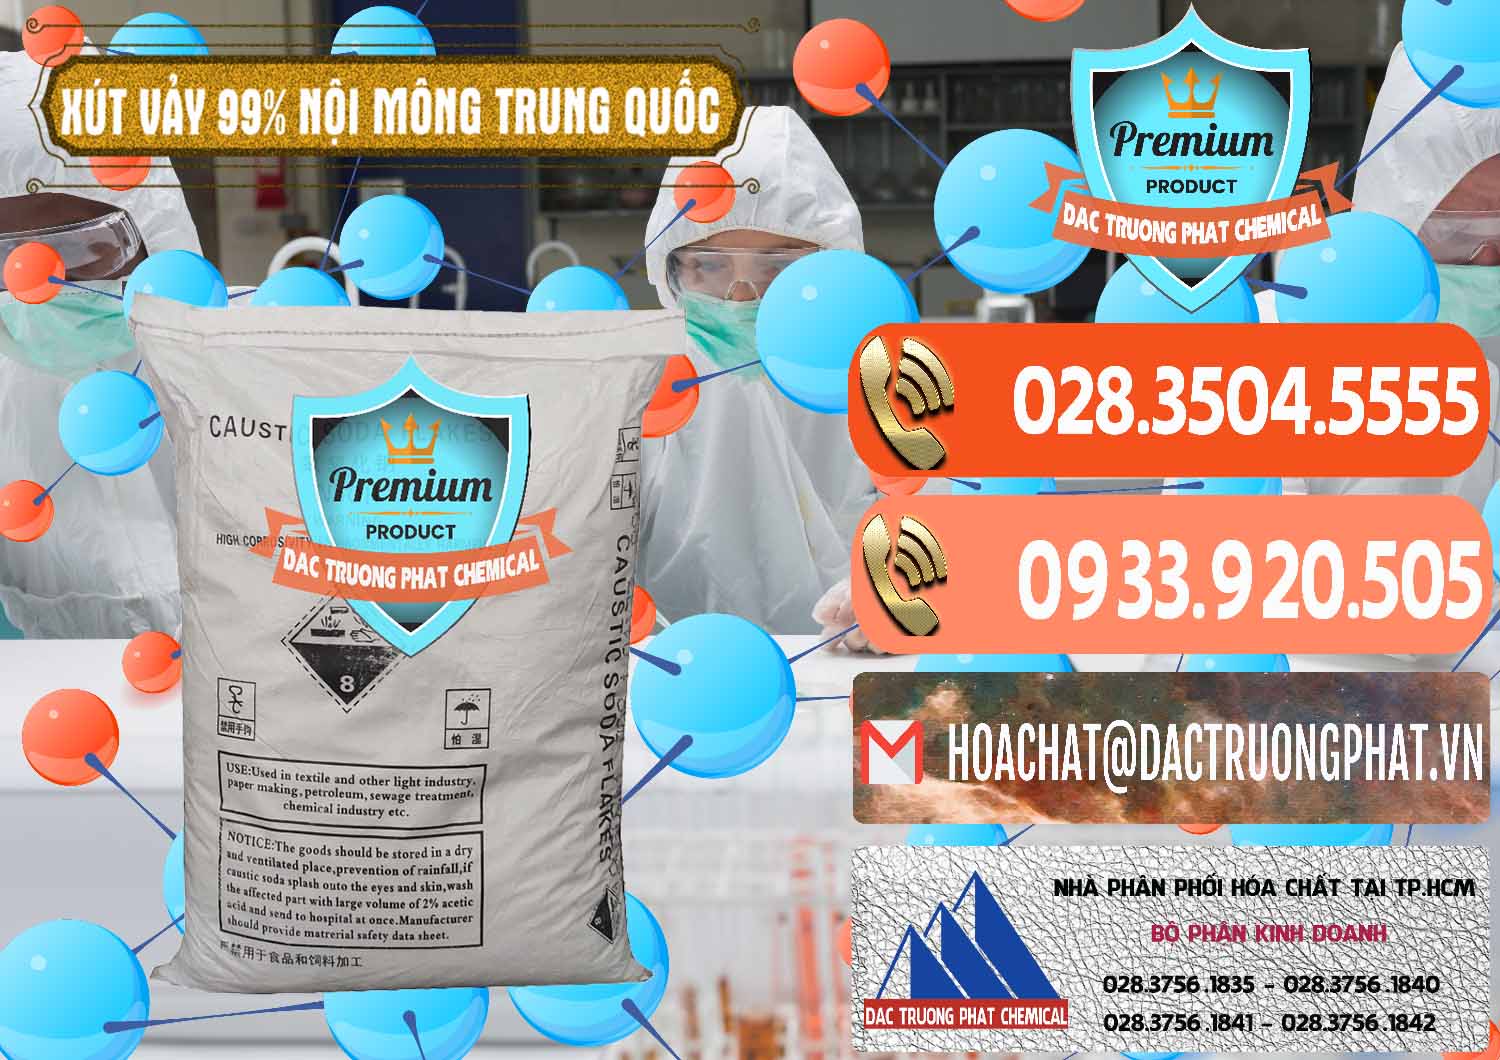 Chuyên phân phối & bán Xút Vảy - NaOH Vảy 99% Nội Mông Trung Quốc China - 0228 - Đơn vị chuyên bán - phân phối hóa chất tại TP.HCM - hoachatmientay.com